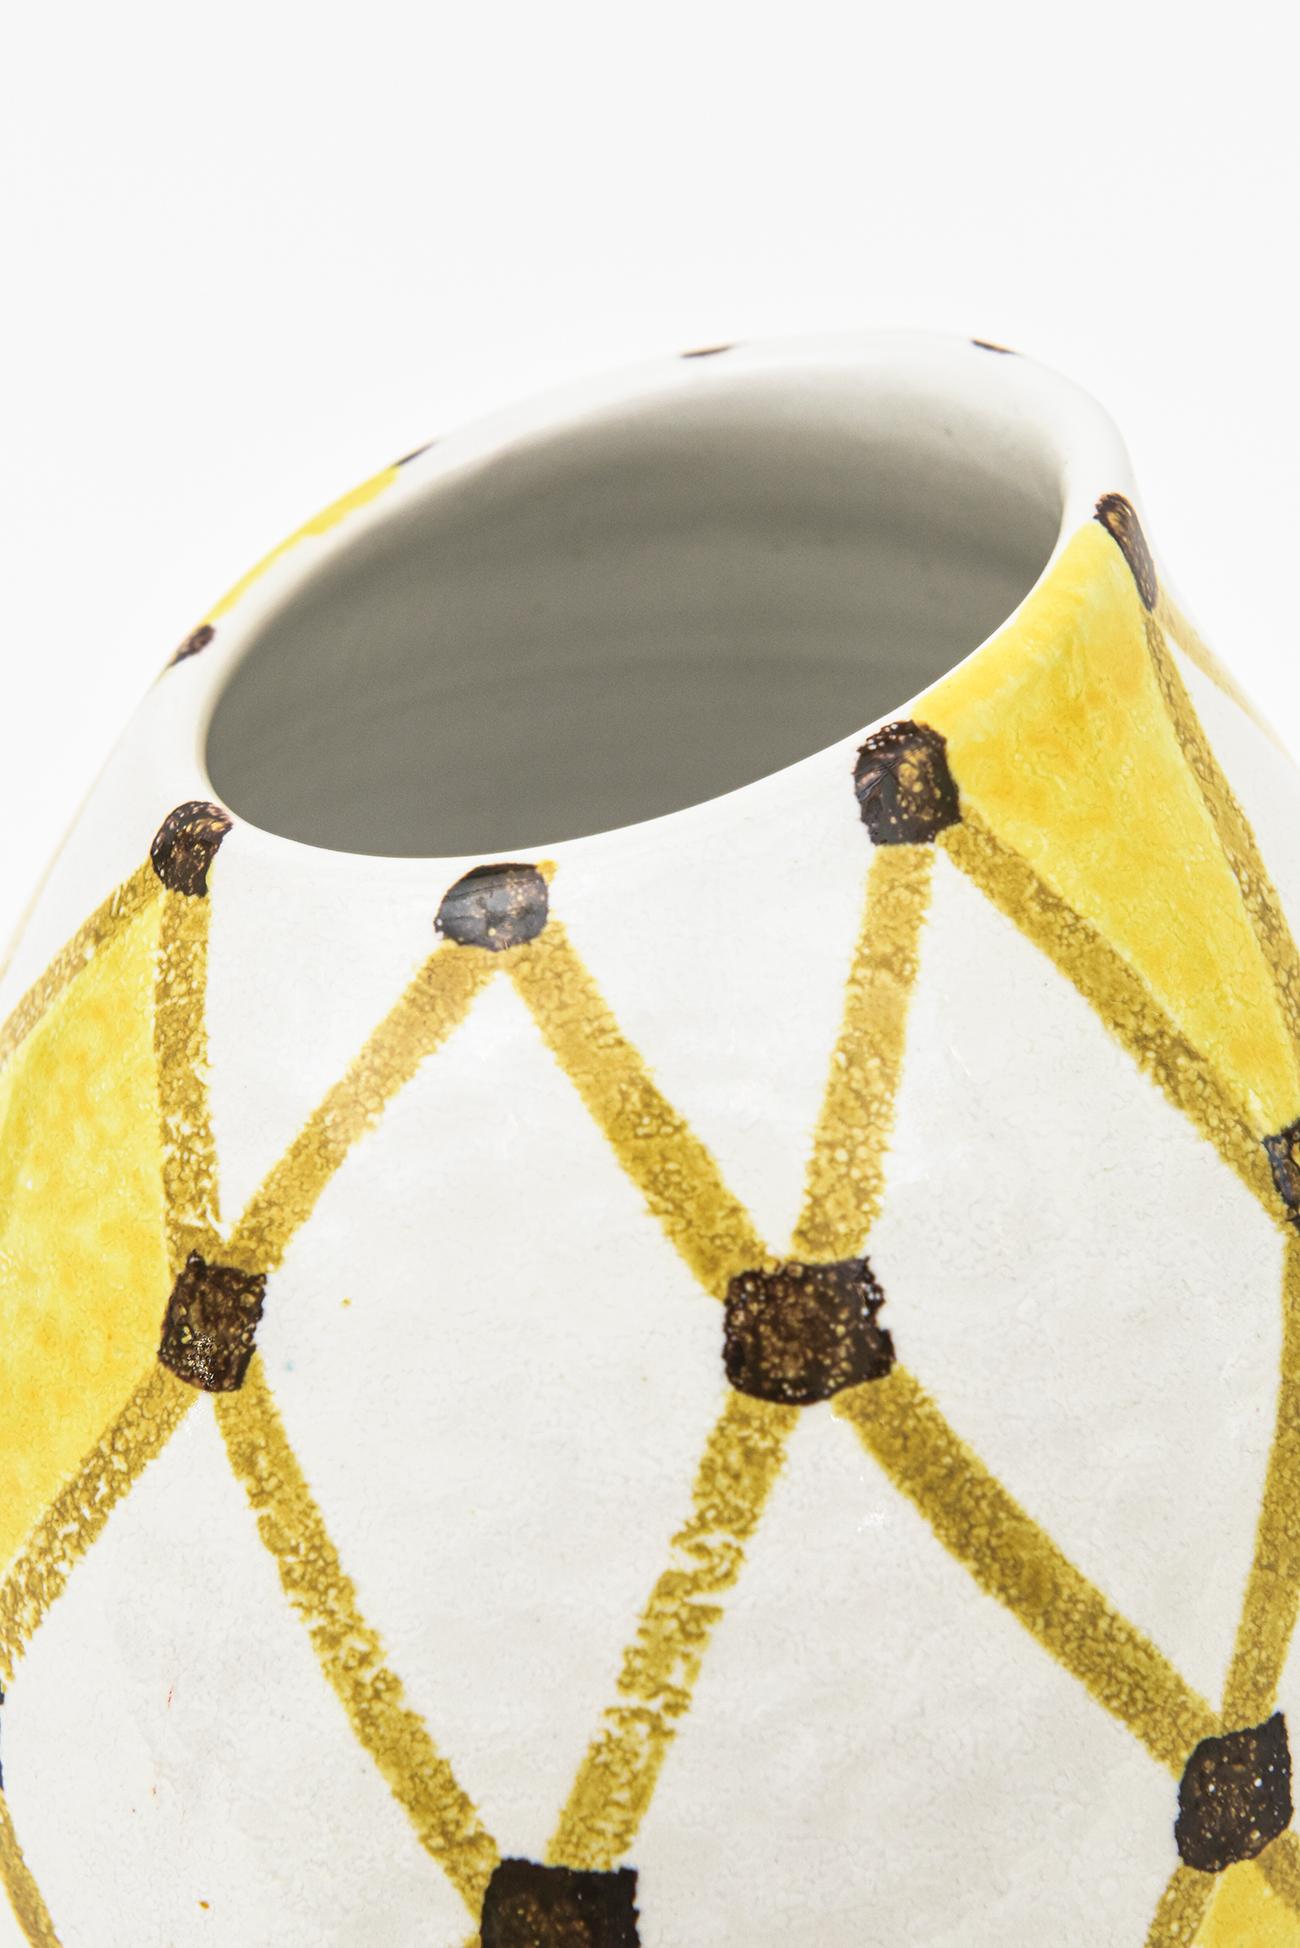 Mid-20th Century Italian Vintage Bitossi Ceramic Diamond Patterned Angled Vase Or Vessel